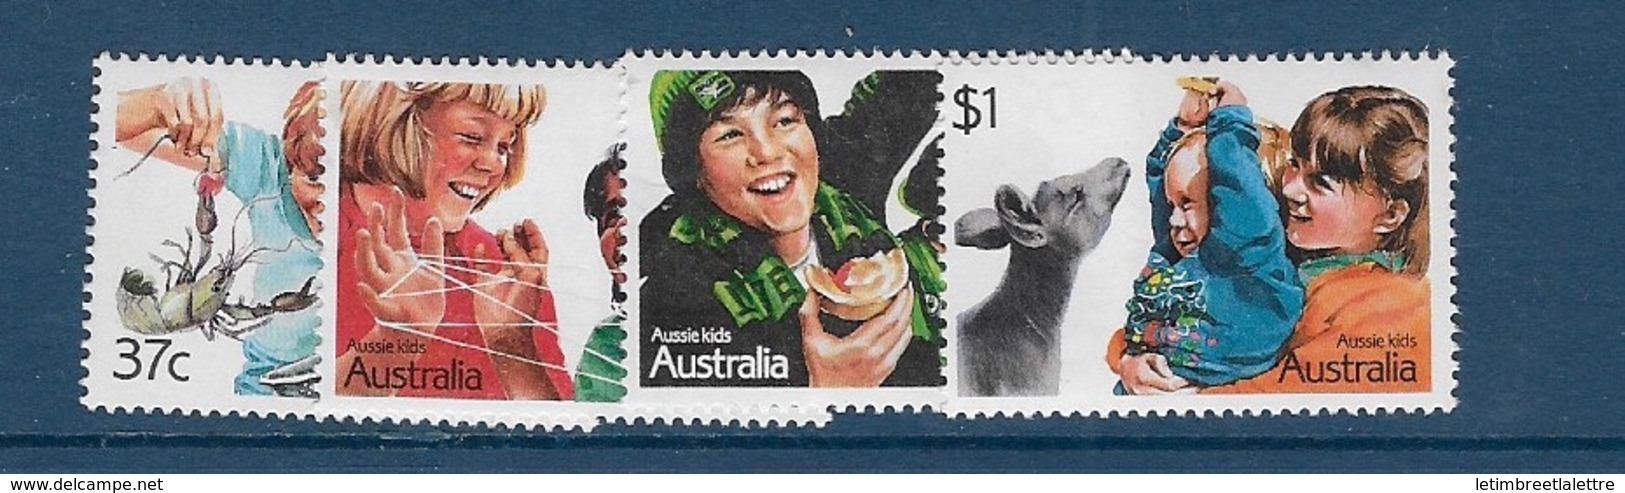 Australie N°1029 à1032** - Mint Stamps